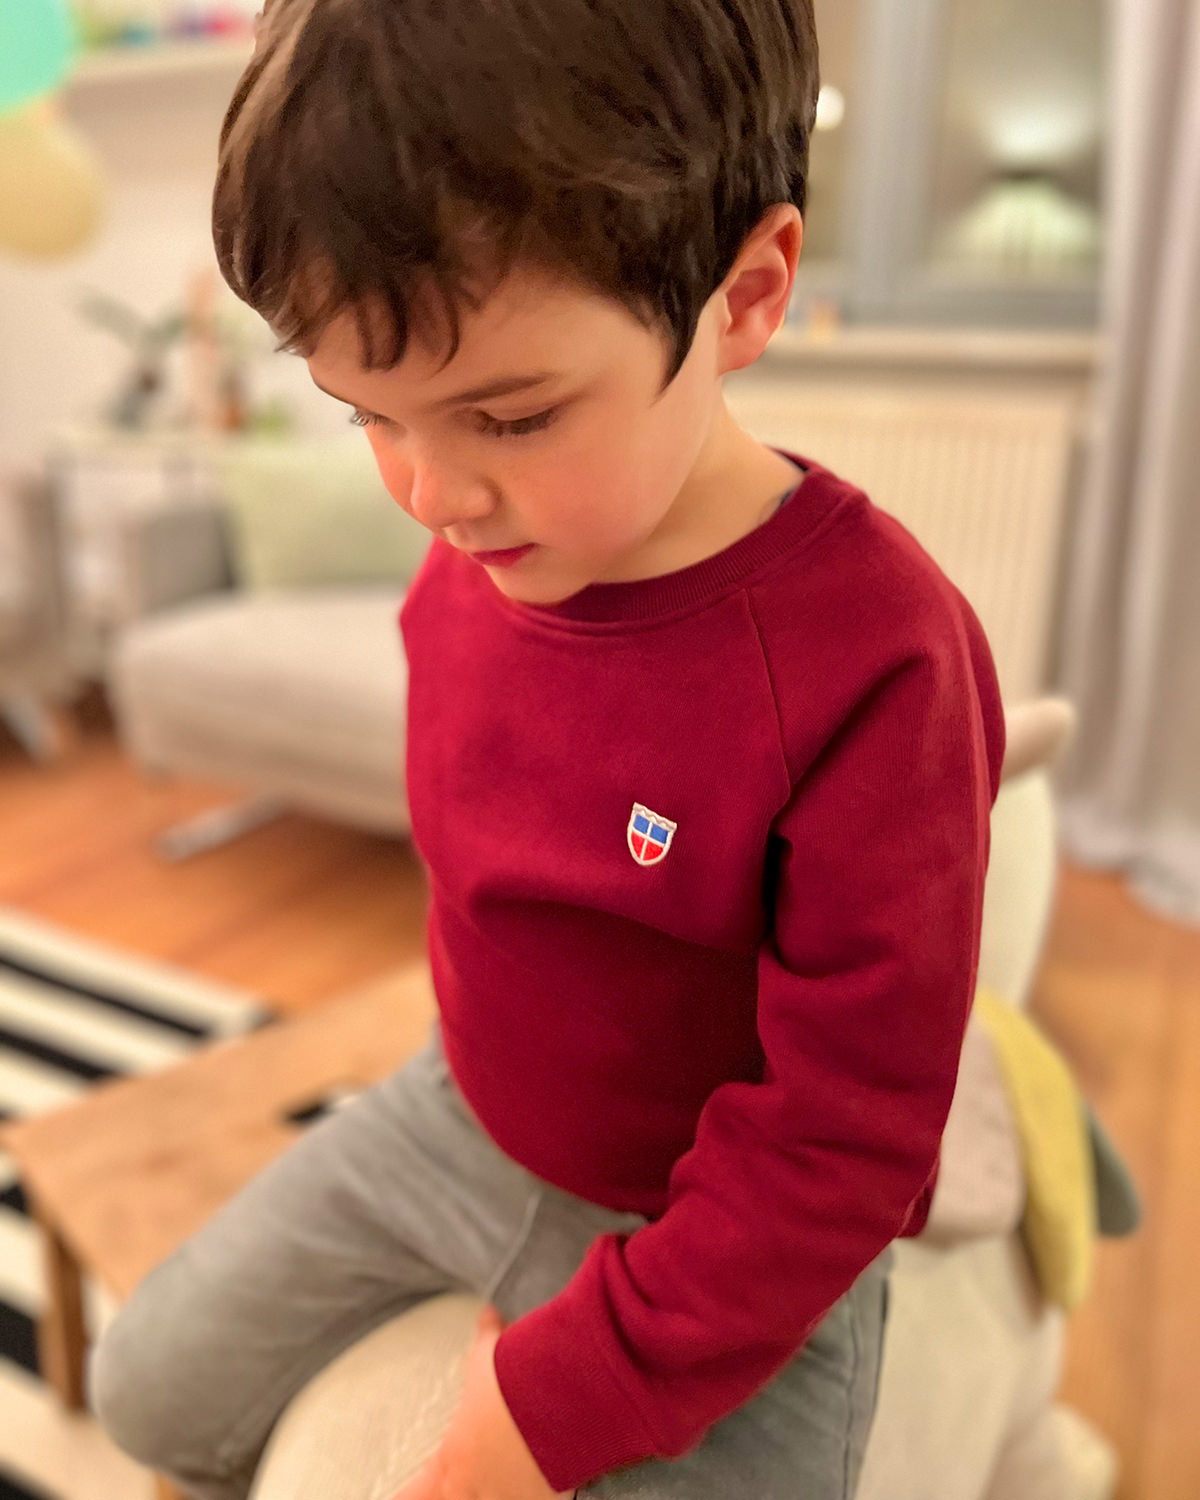 Anton ist 5 Jahre alt und liebt sein neues Sweatshirt.